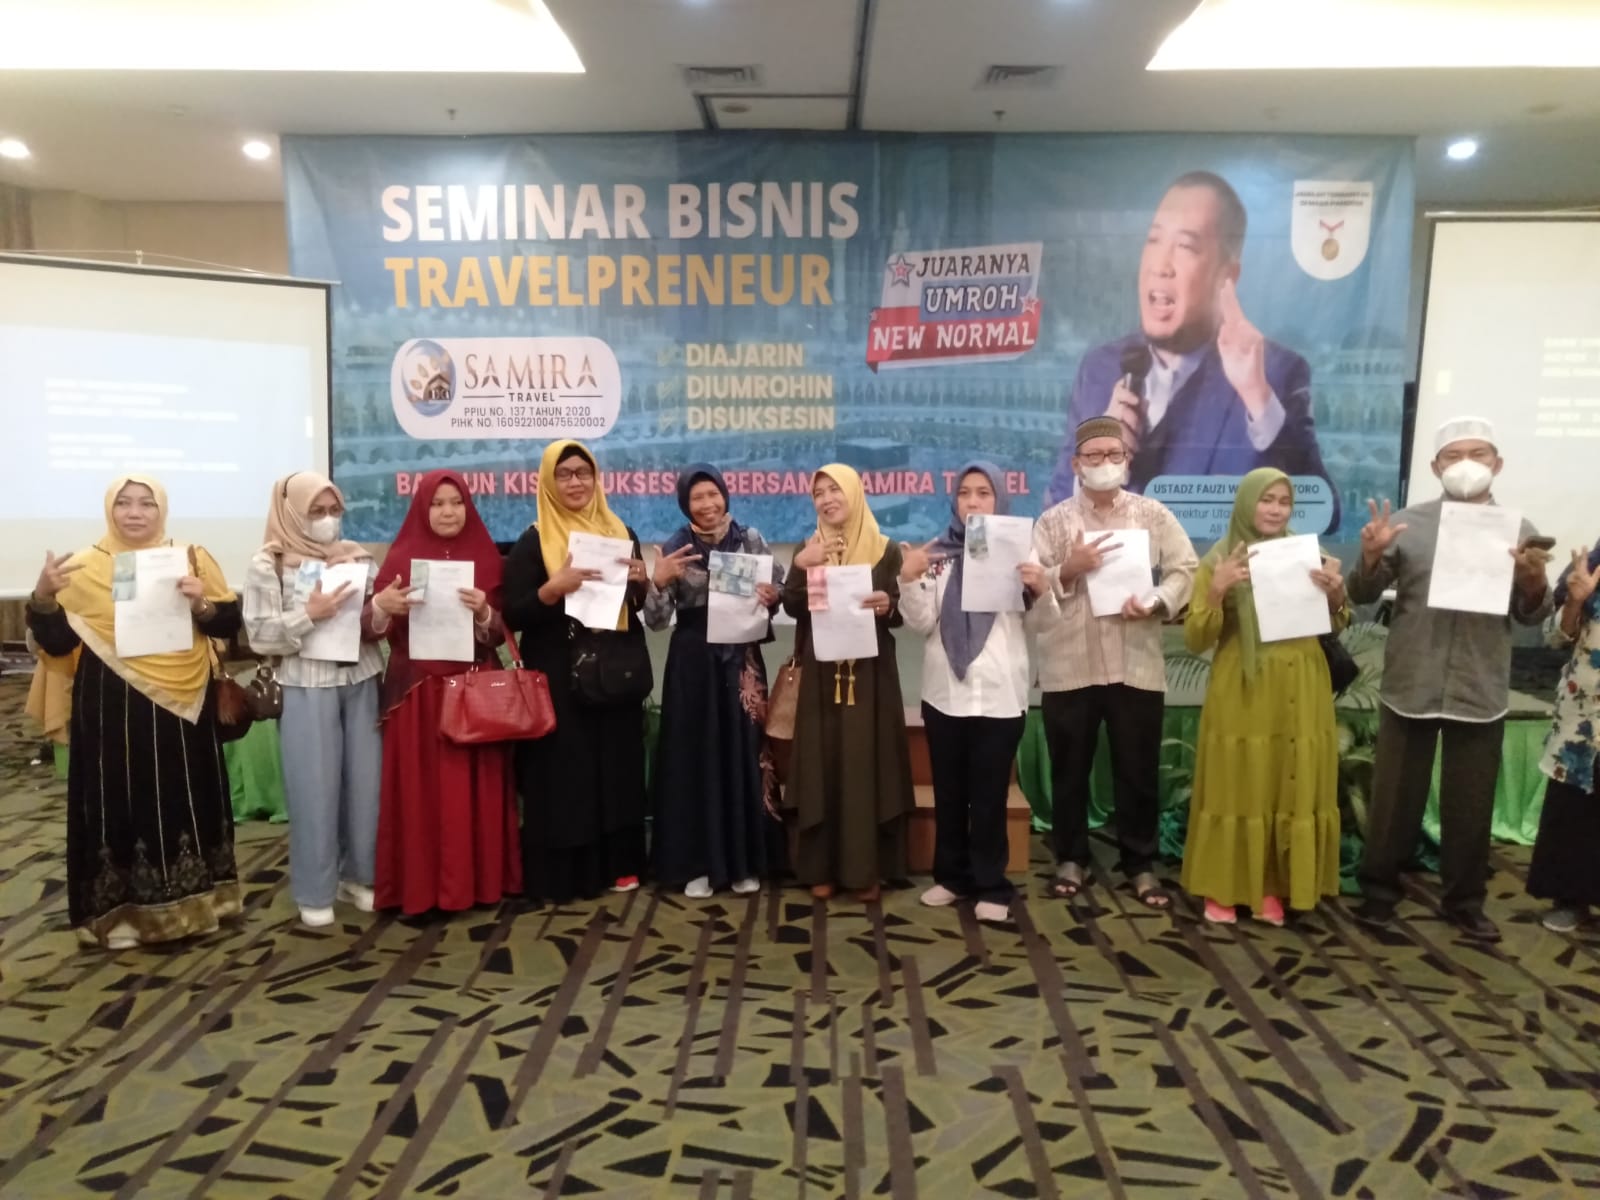 Samira Travel Adakan Seminar Bisnis Travelpreneur